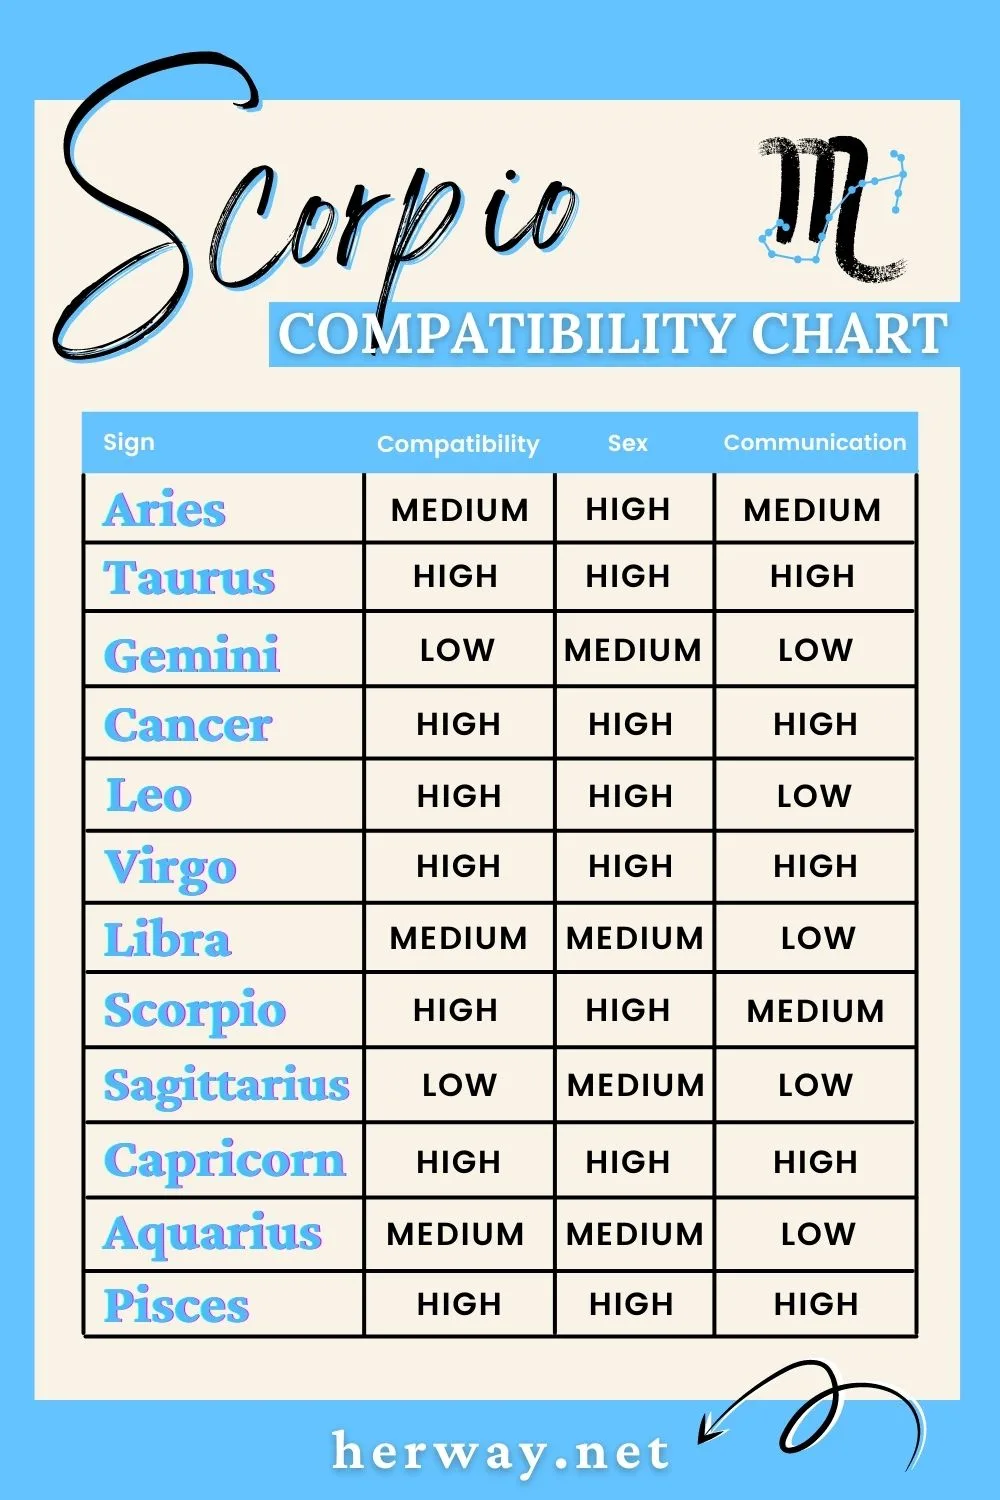 scorpio compatibility chart 